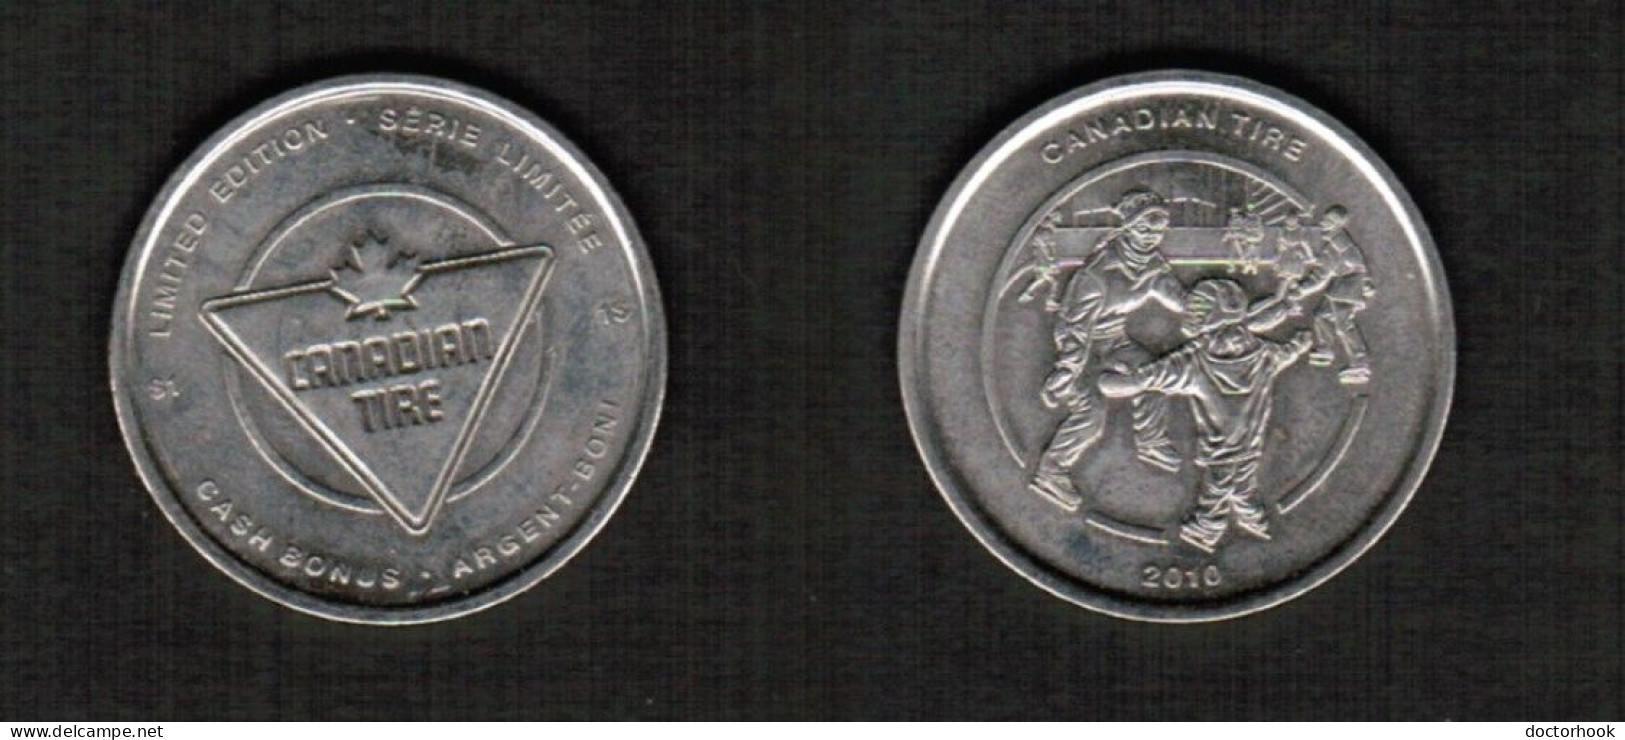 CANADA.  CANADIAN TIRE---$1.00 TOKEN (CONDITION AS PER SCAN) (T-177) - Monedas / De Necesidad